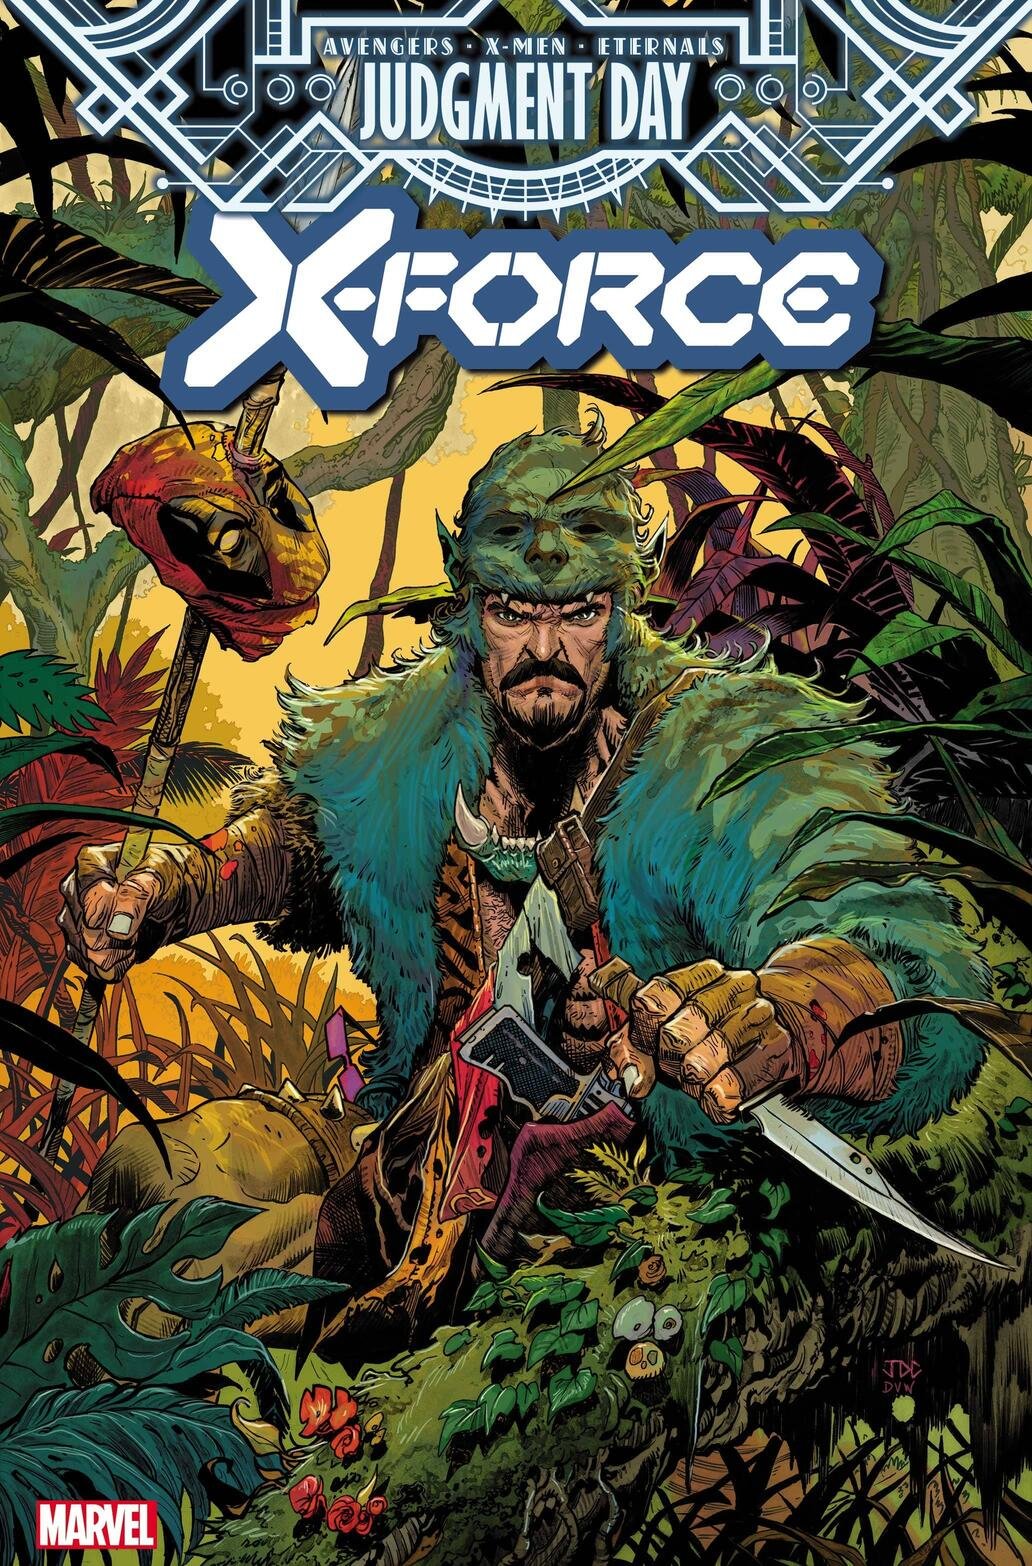 Cover di X-Force 31 di Joshua Cassara